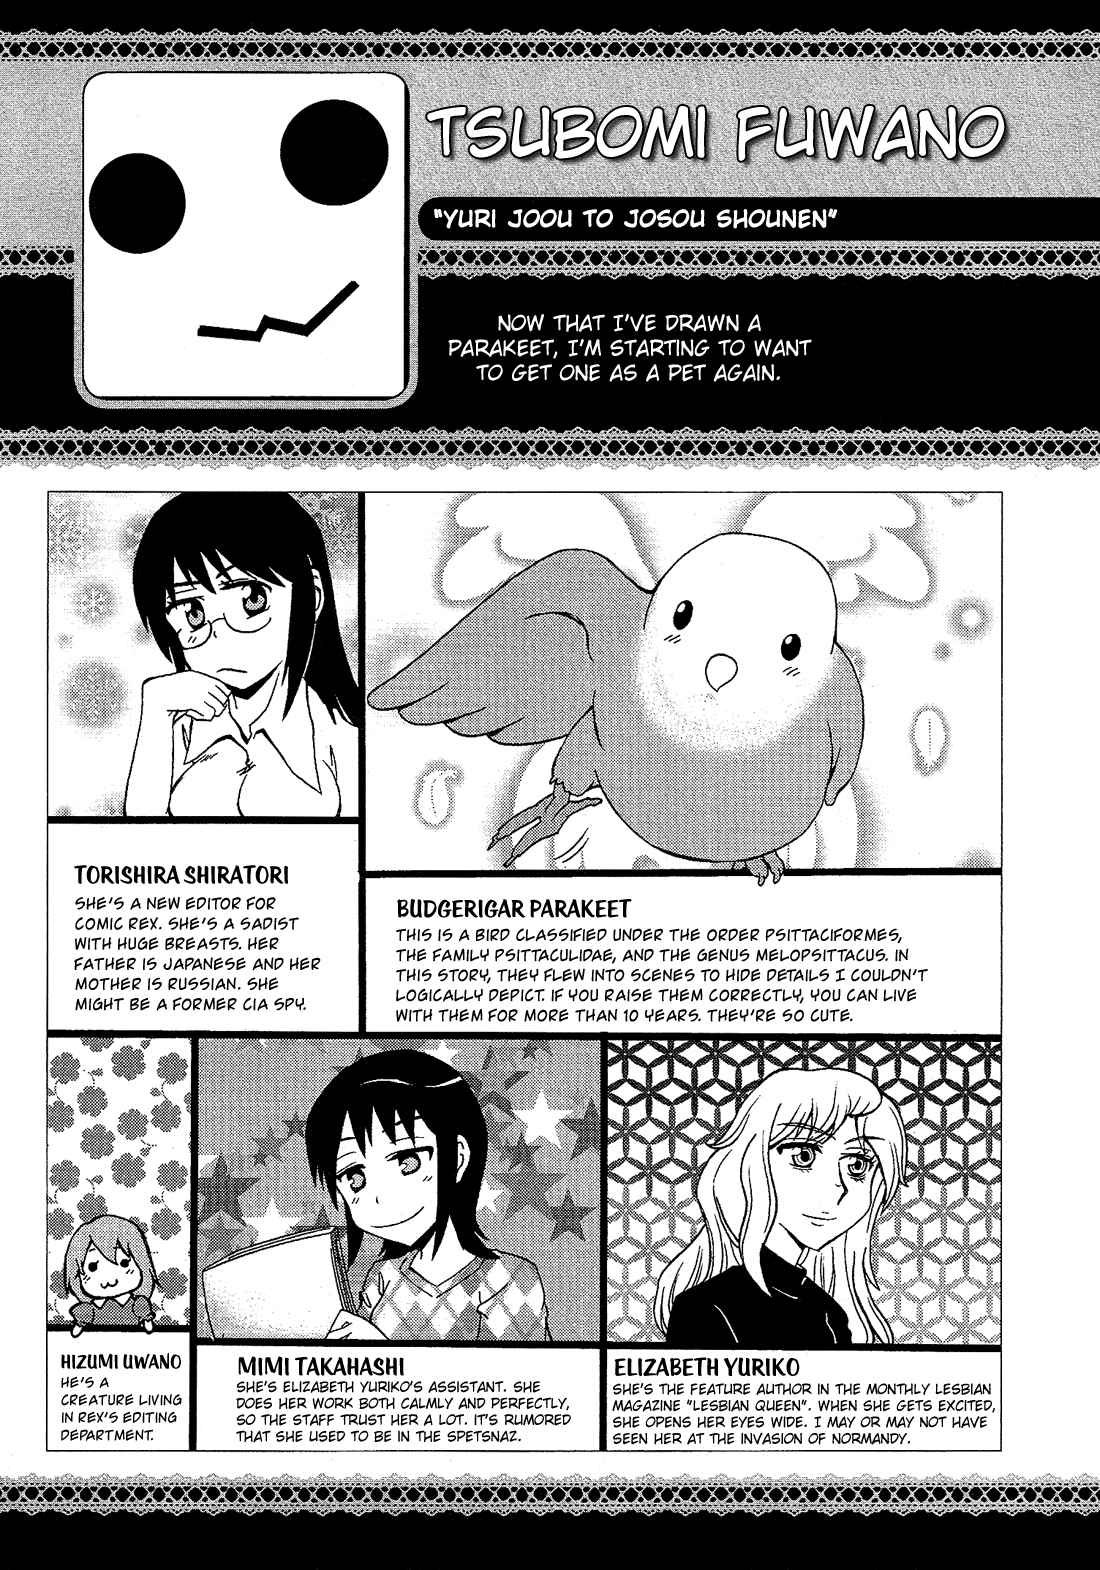 Josou Shounen Anthology Comic Vol. 11 Ch. 11.5 Yuri Joou to Josou Shounen (Fuwano Tsubomi)